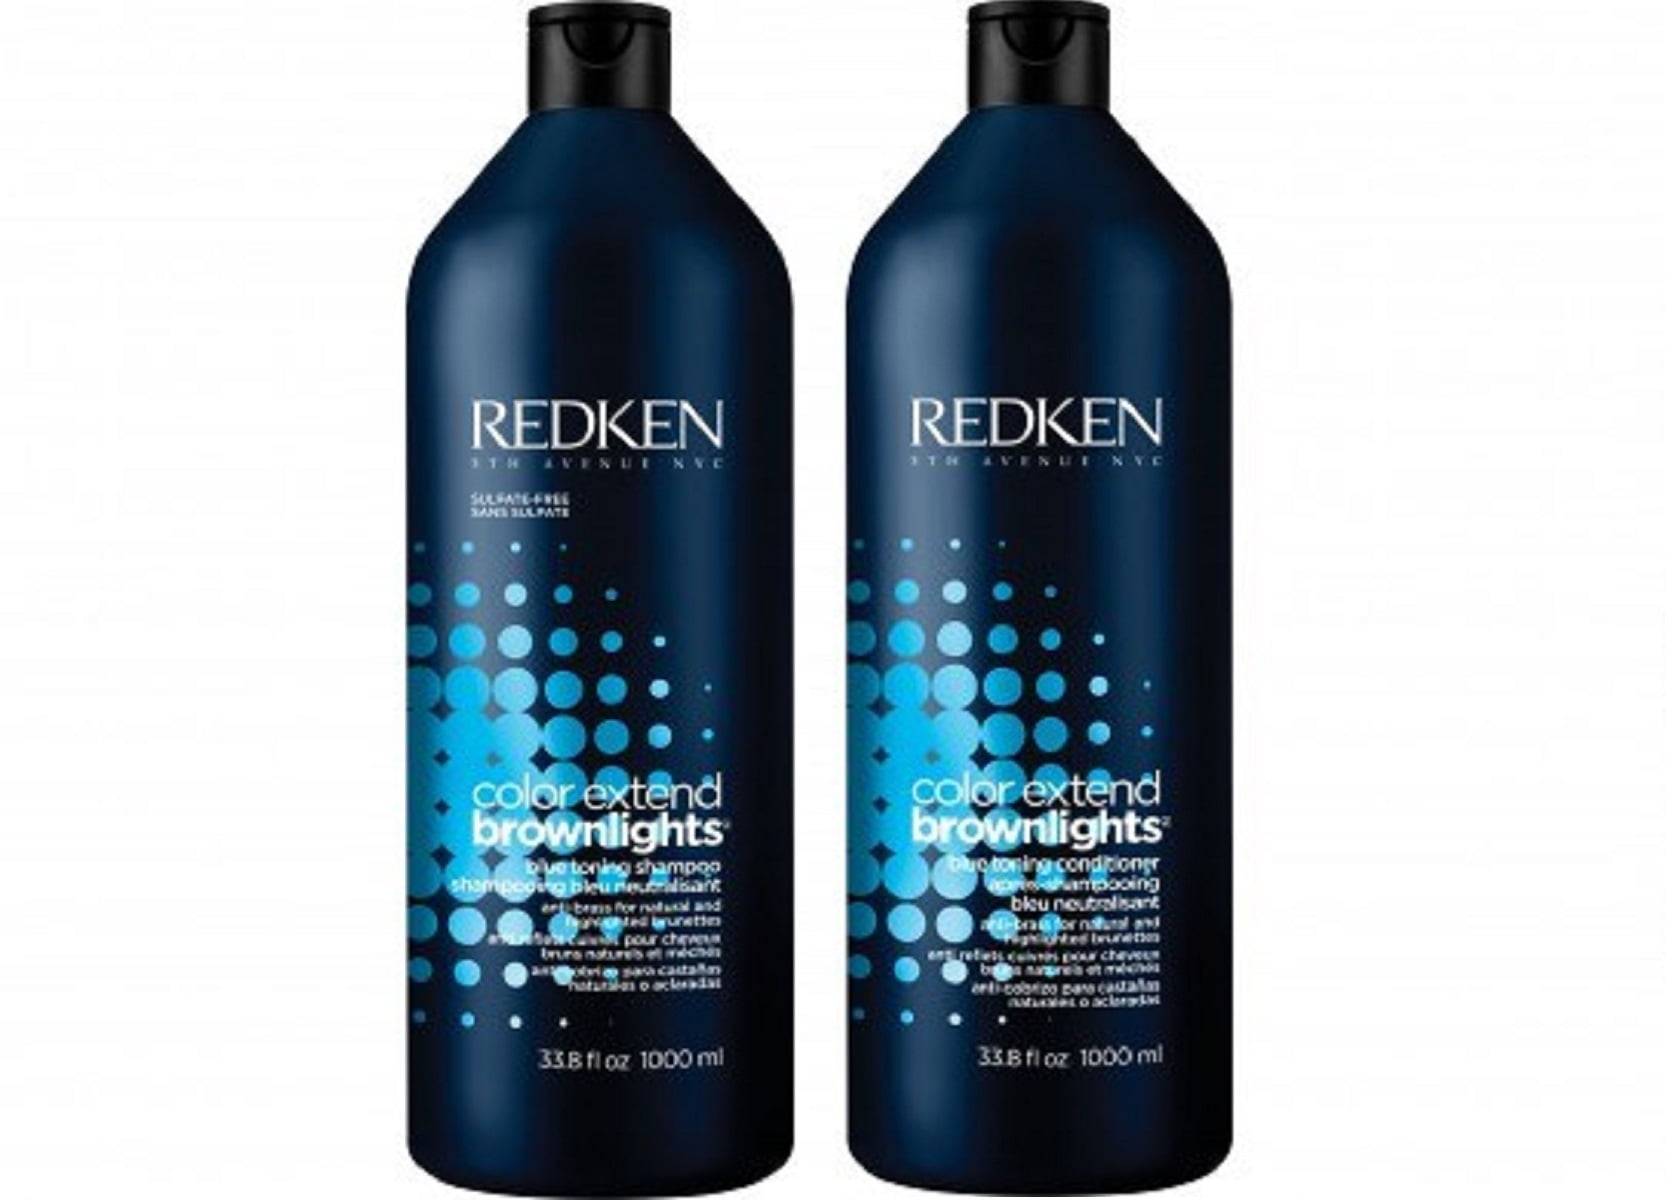 Slutning anker Jakke Redken Color Extend Brownlights Shampoo and Conditioner 1 Liter Duo Set -  Walmart.com